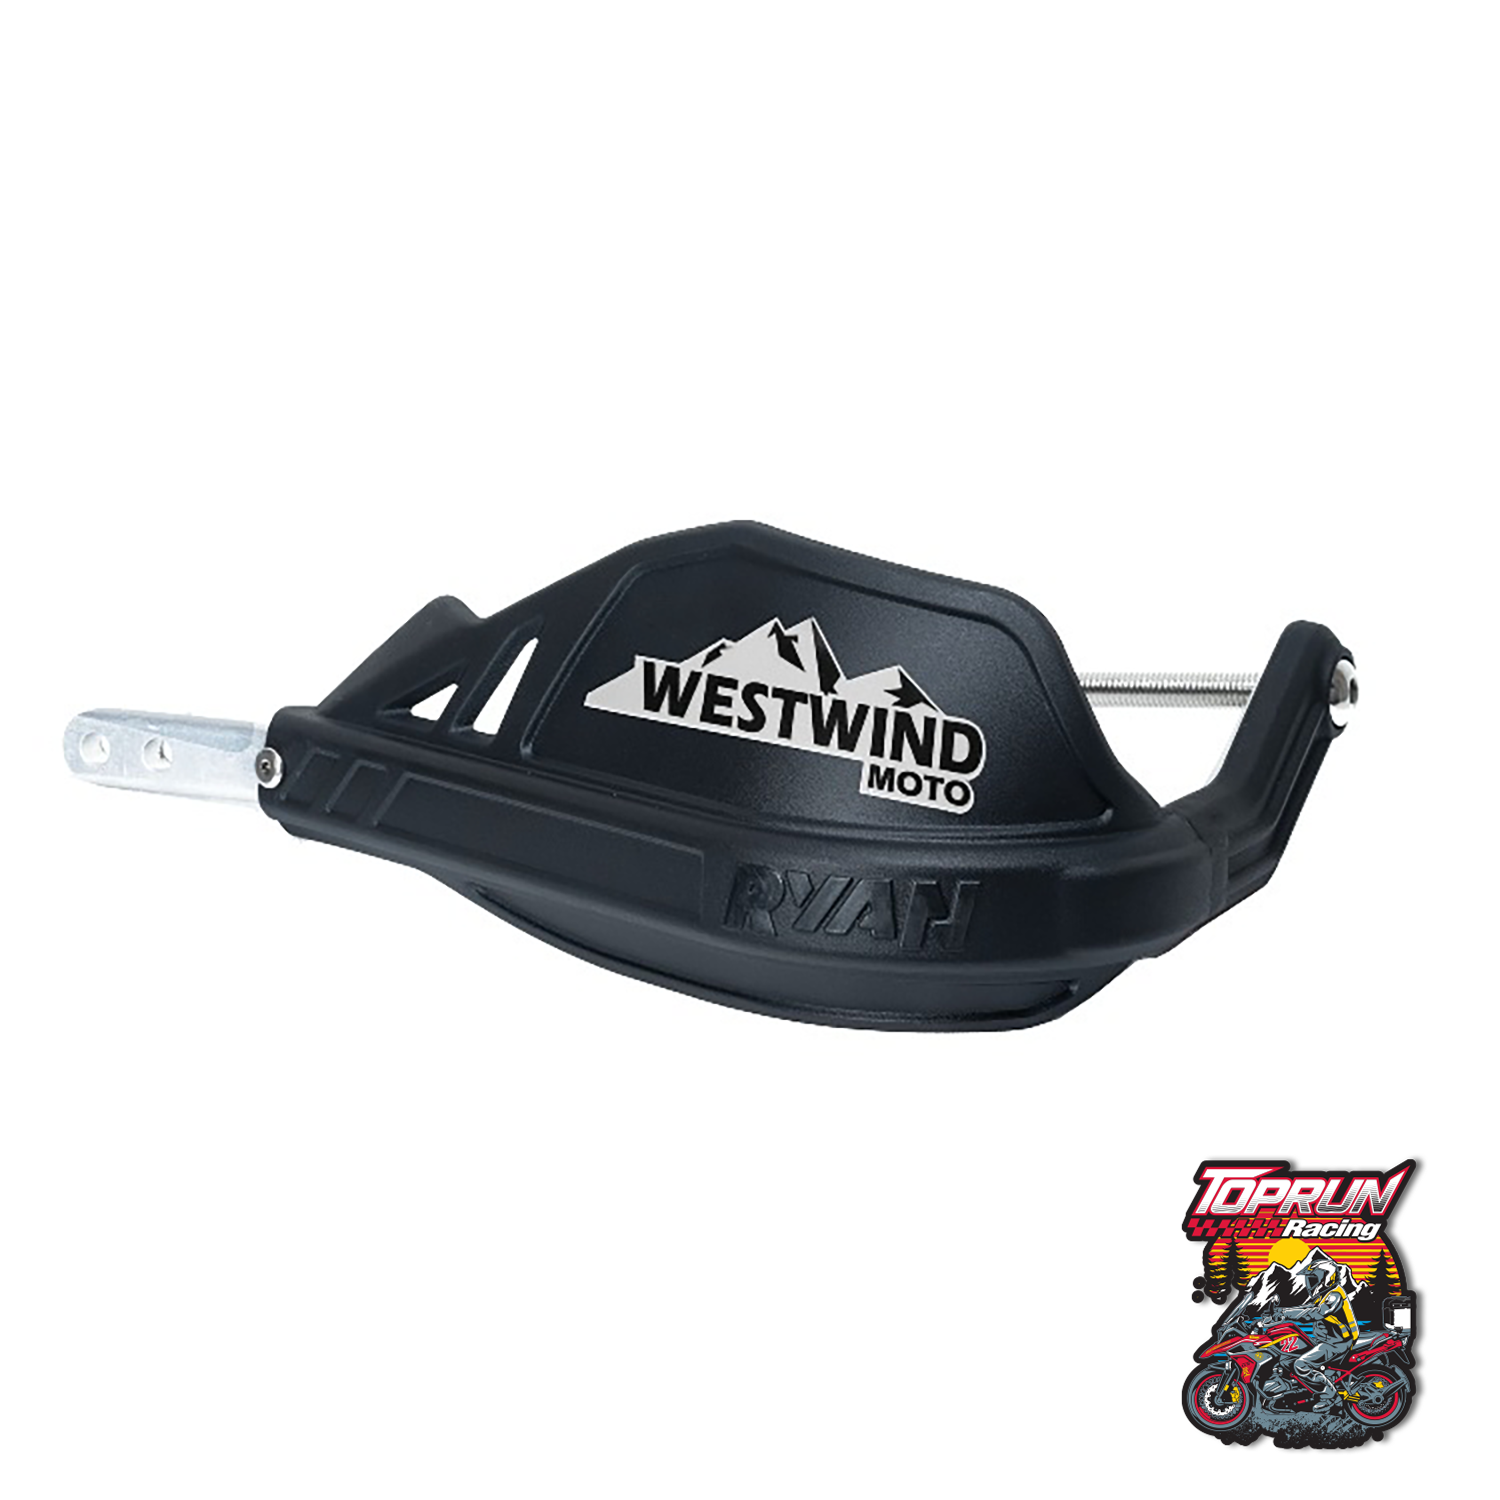  Bảo vệ tay lái Westwind Moto cho BMW R1200GS/GSA - R1250GS/GSA 